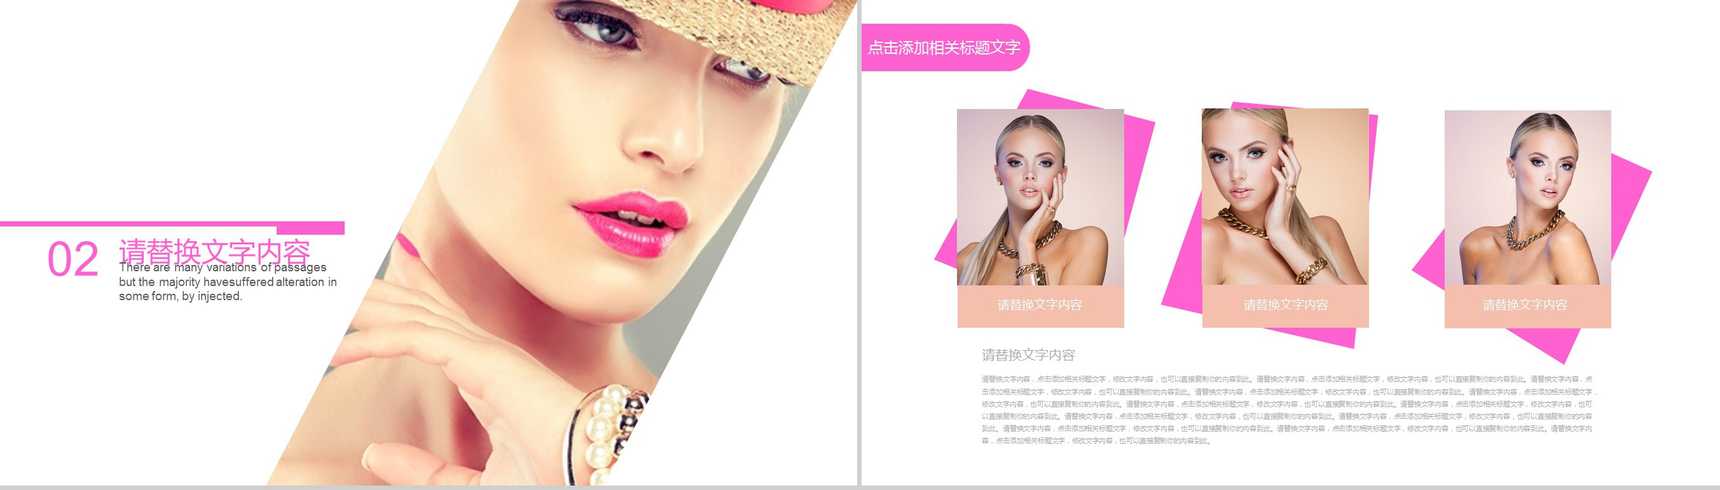 化妆品时尚美妆企业宣传PPT模板-5